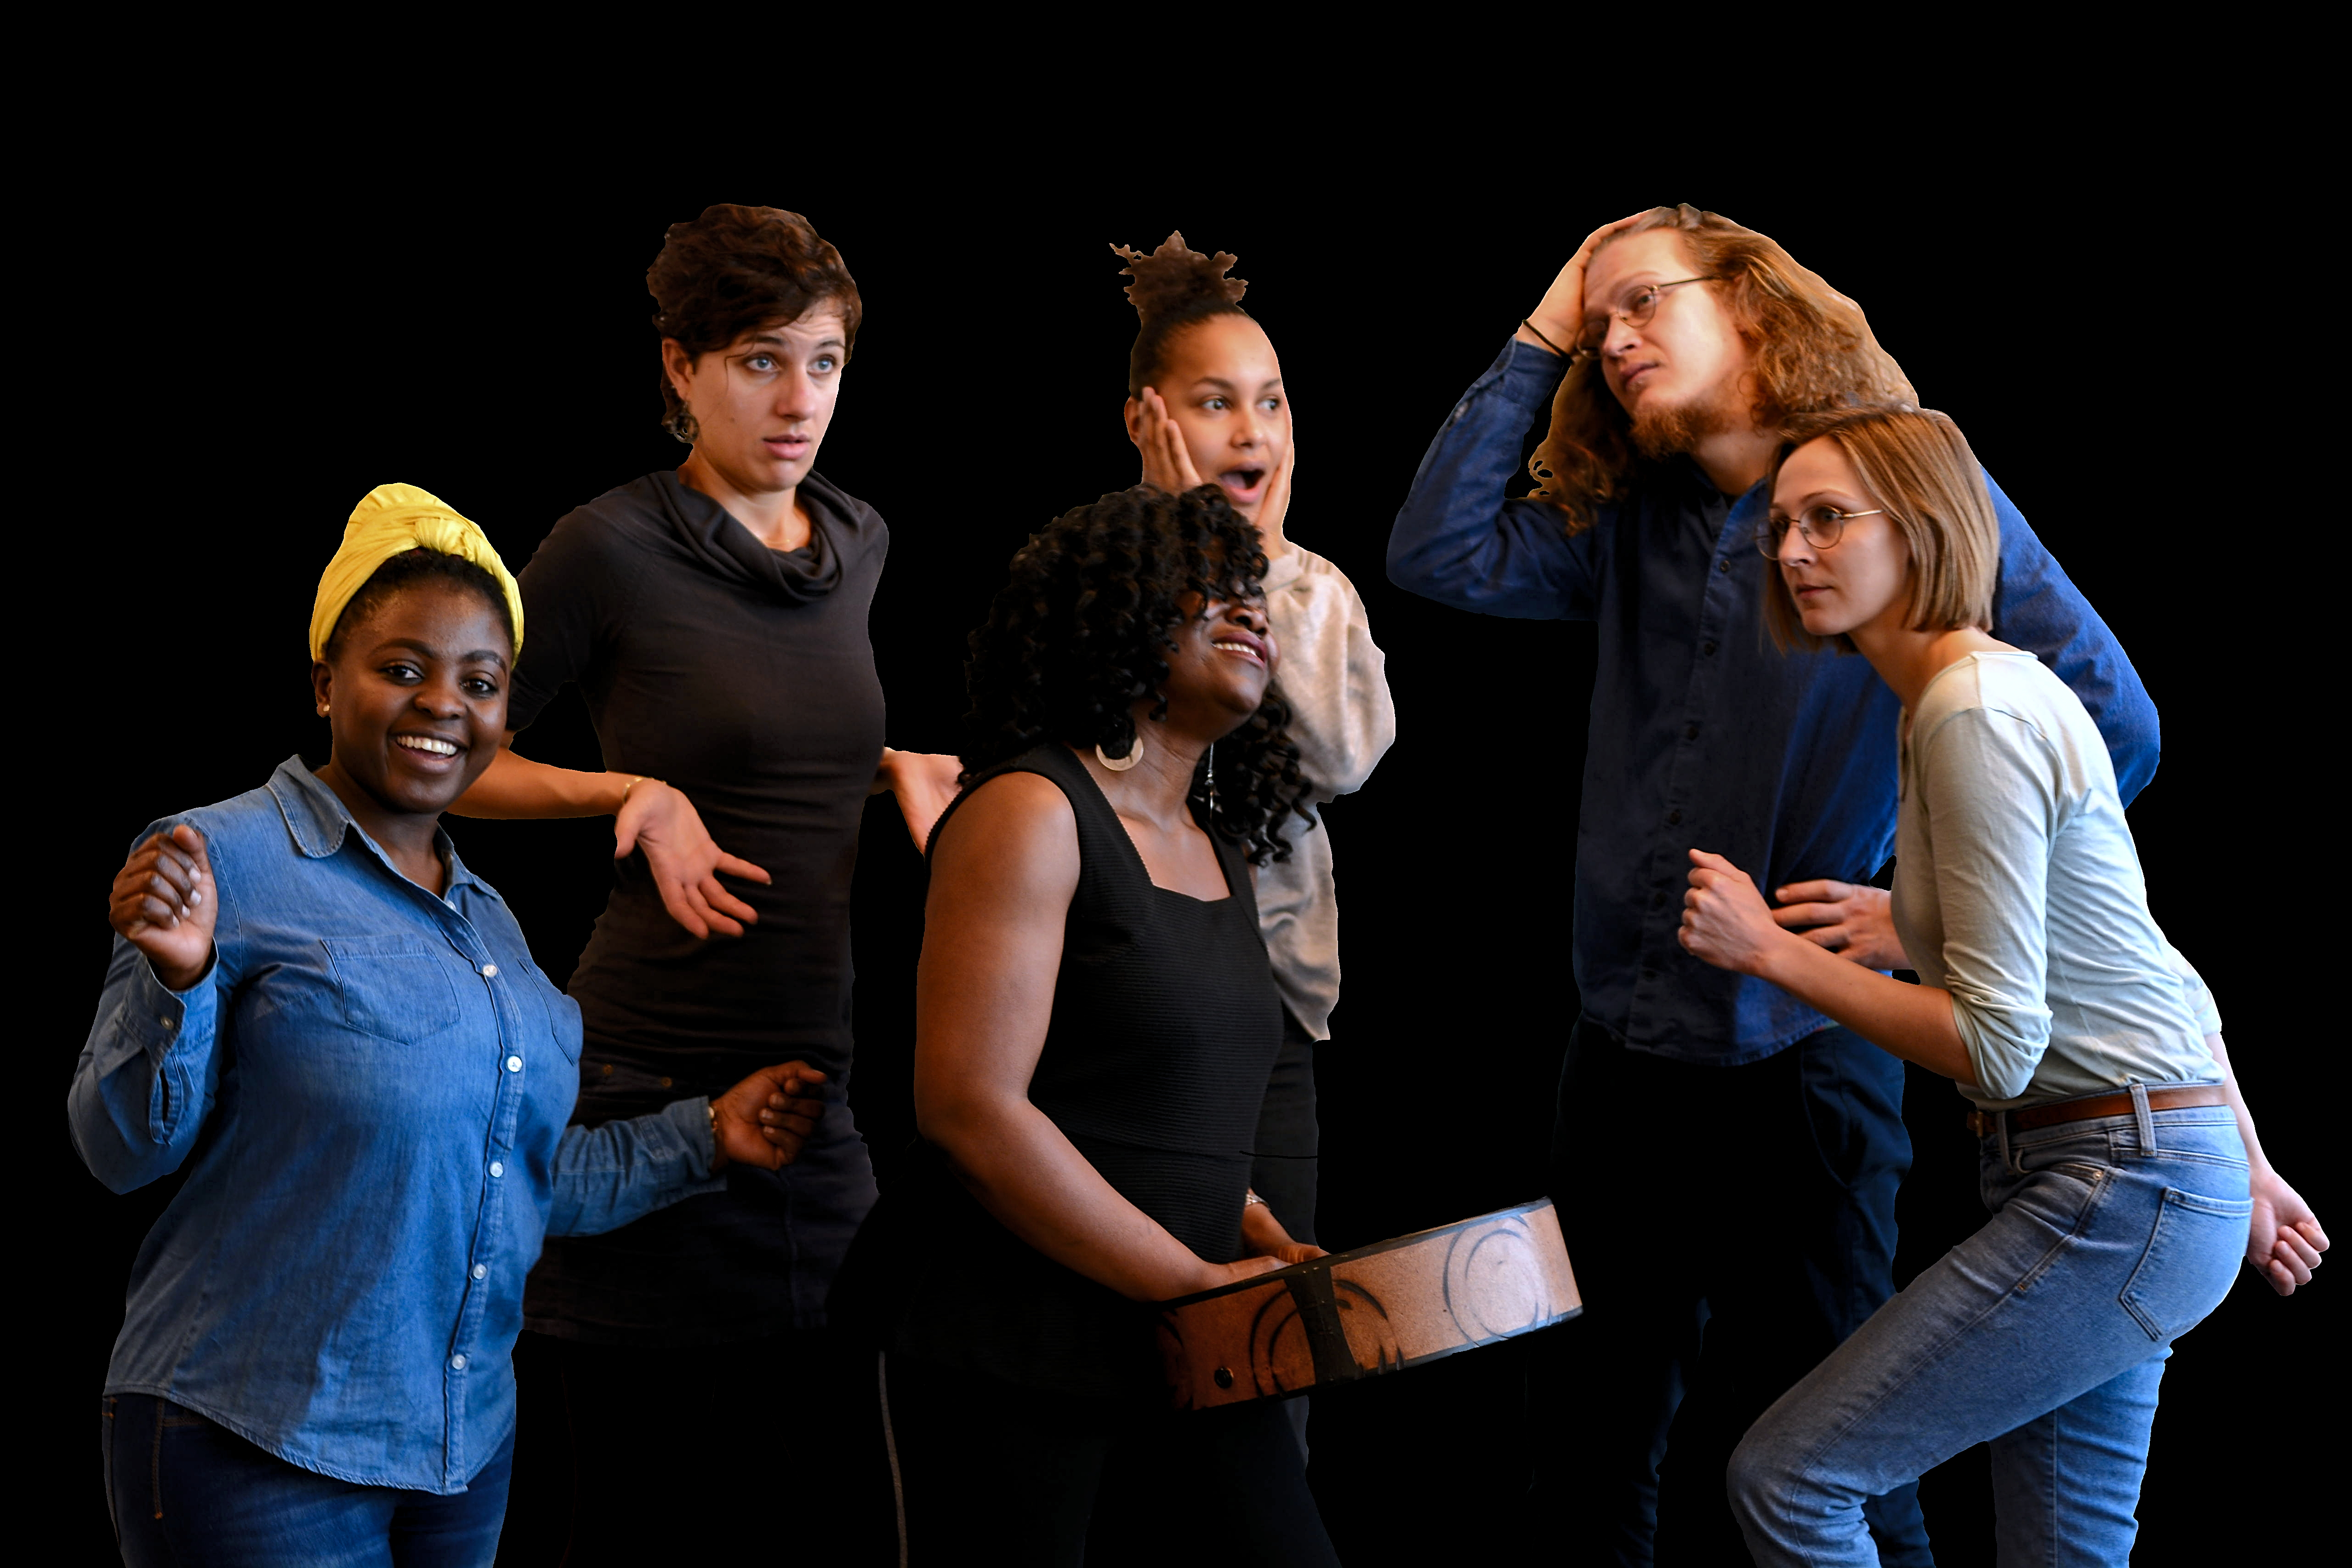 Theater Plakat des Stücks: es zeigt sechs Menschen vor einem schwarzen Hintergrund - CC: Charlott Schönwetter